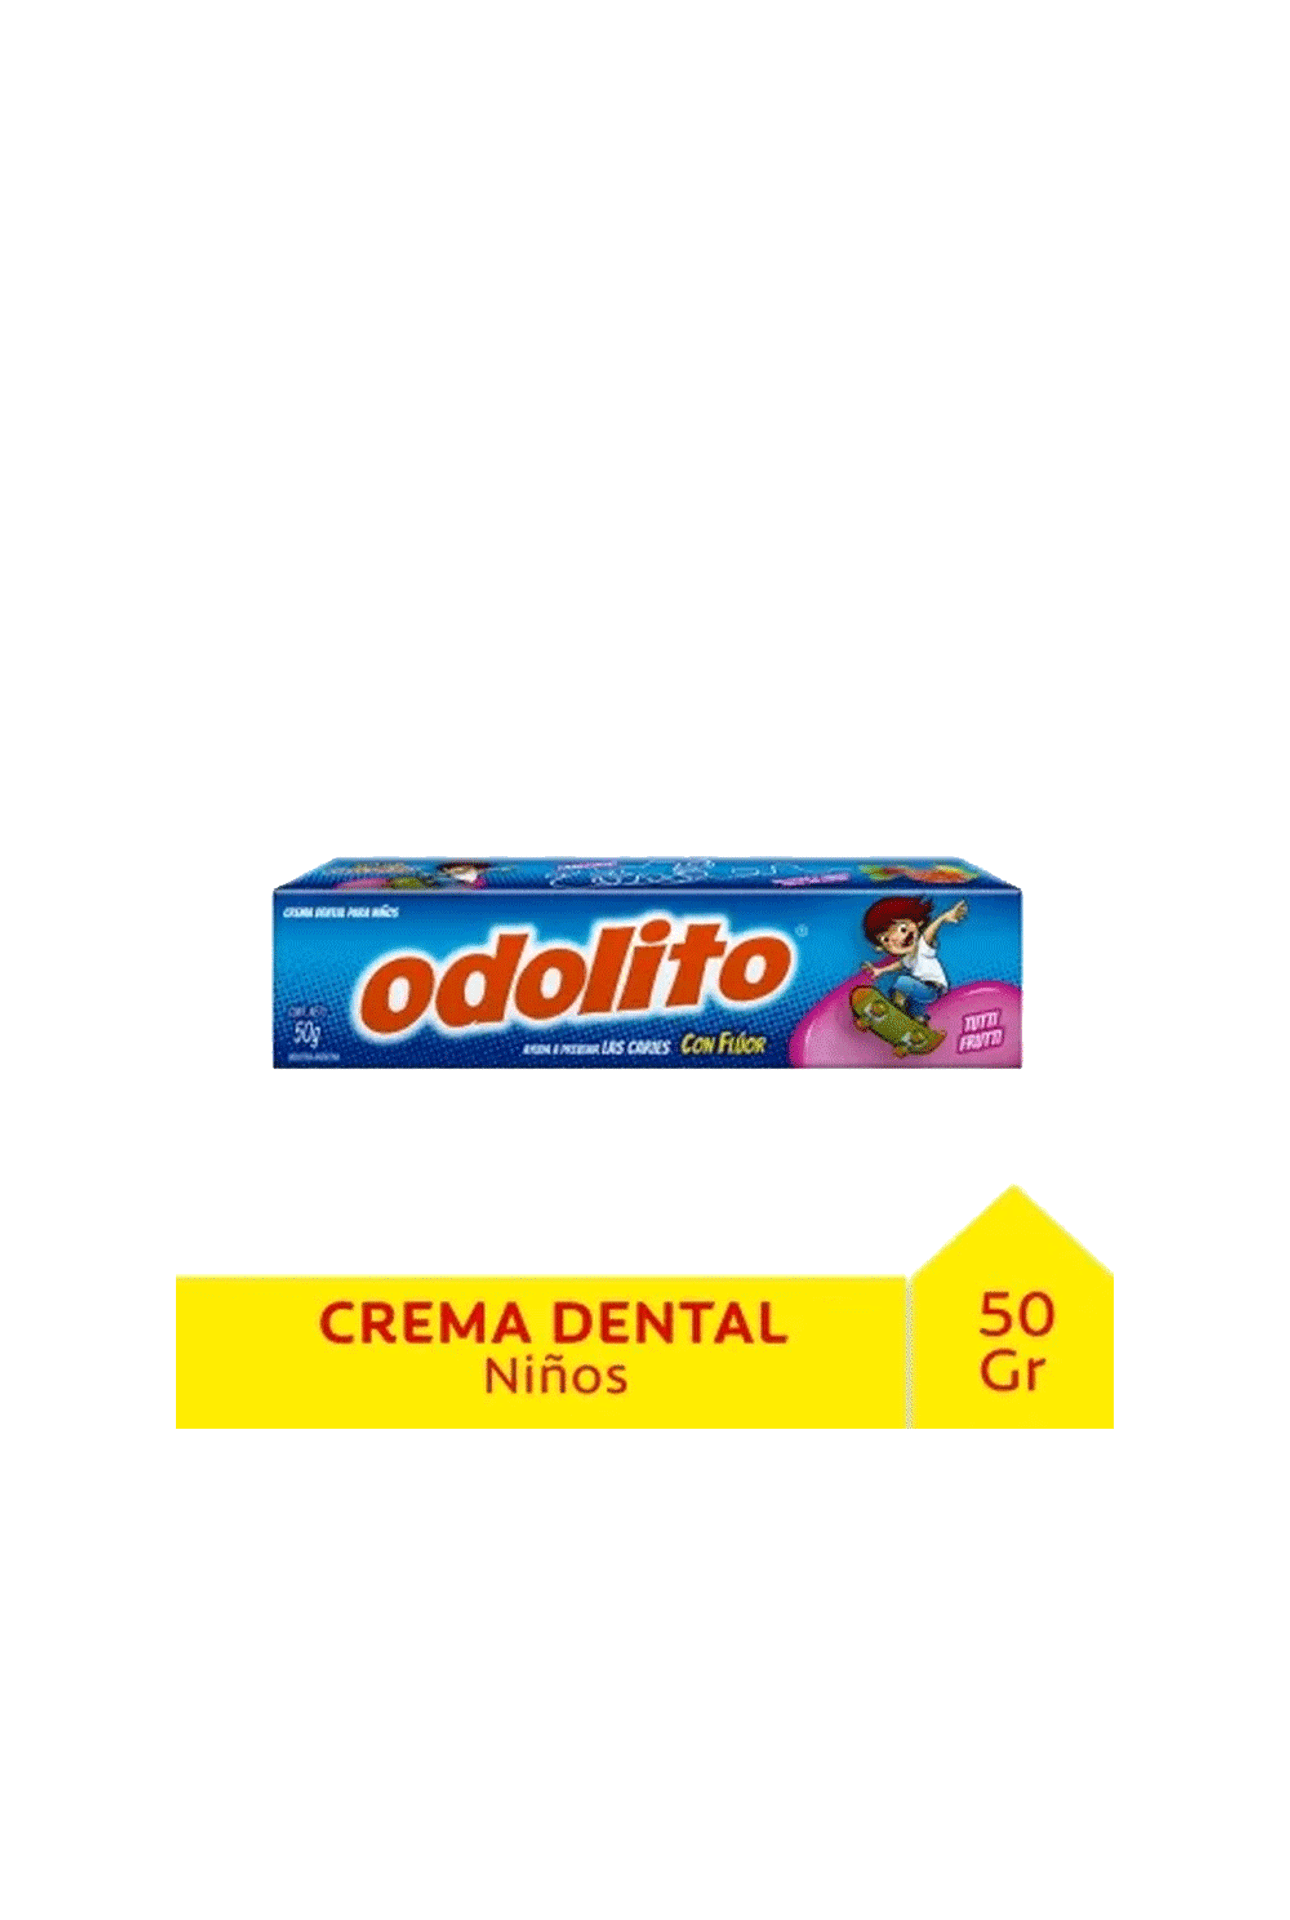 Odol-Gel-Dental-Odolito-Tutti-Fruti-x-50-gr-7509546685847_img1